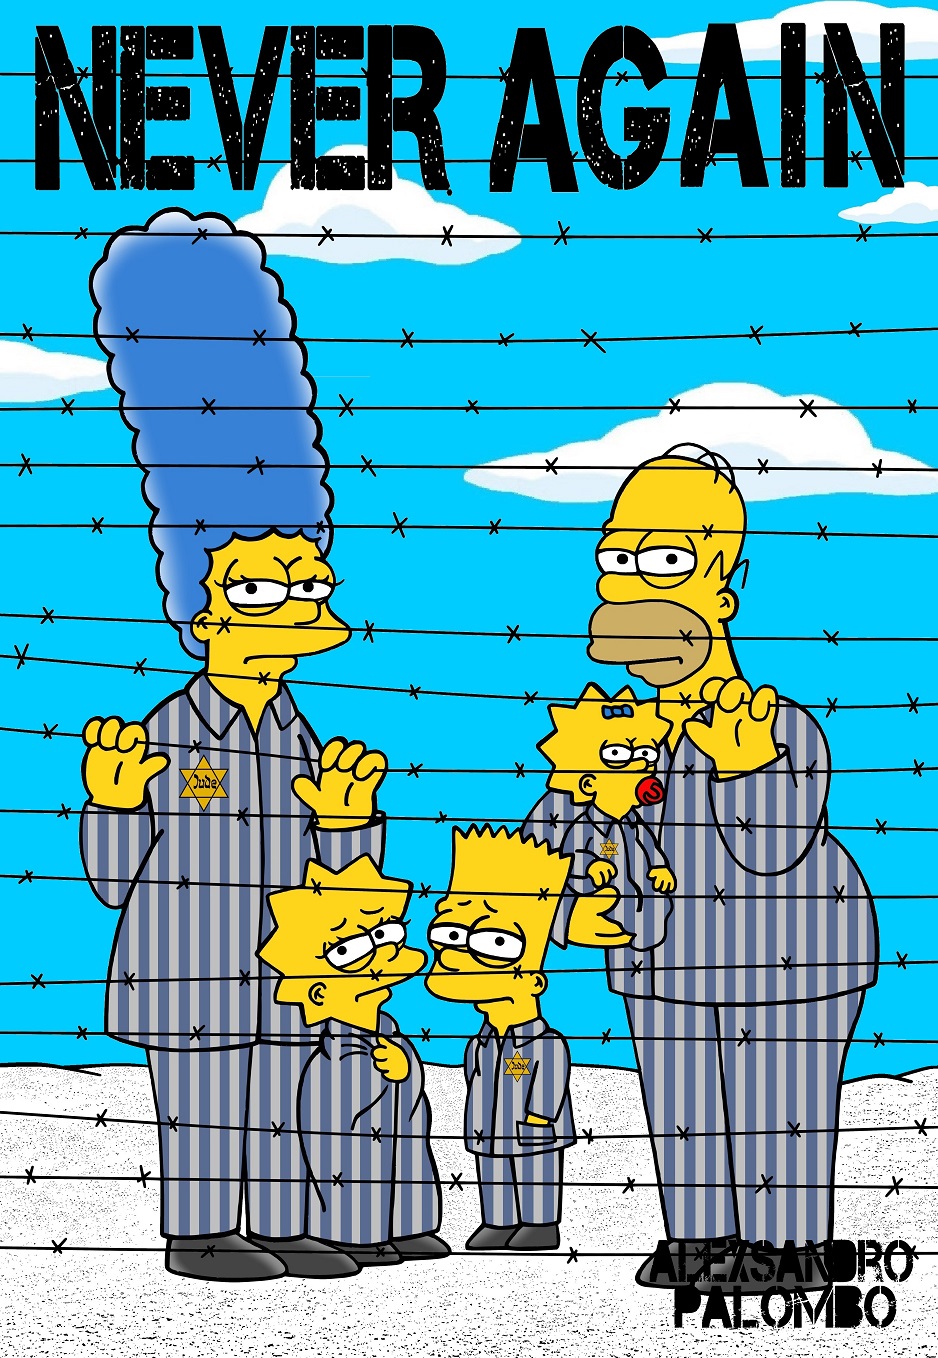 Satirický kreslíř a aktivista vyobrazuje postavičky ze známého seriálu Simpsonovi jako vězně v koncentračním táboře. "Nikdy víc", říkají hesla na tabulích obětí. Stejný název dostal i celý projekt.